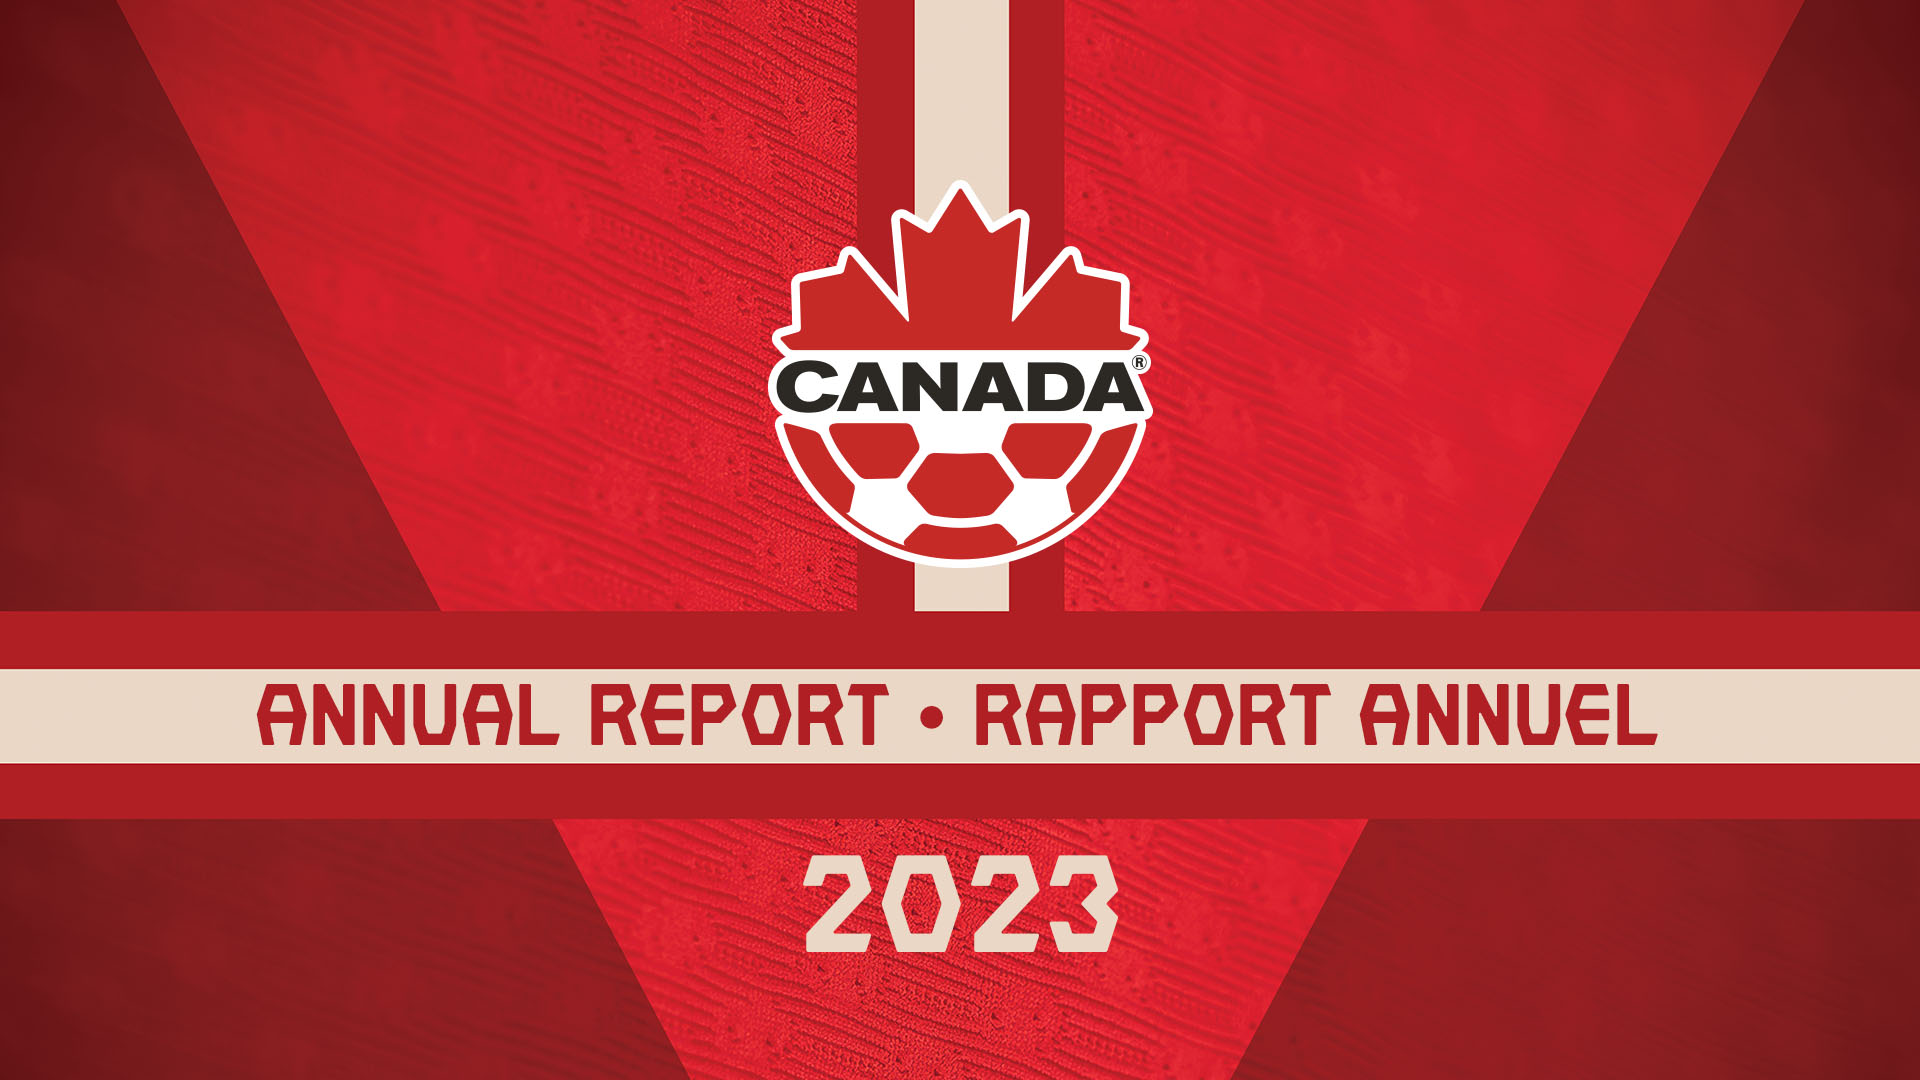 CANADA SOCCER'S 2023 ANNUAL REPORT